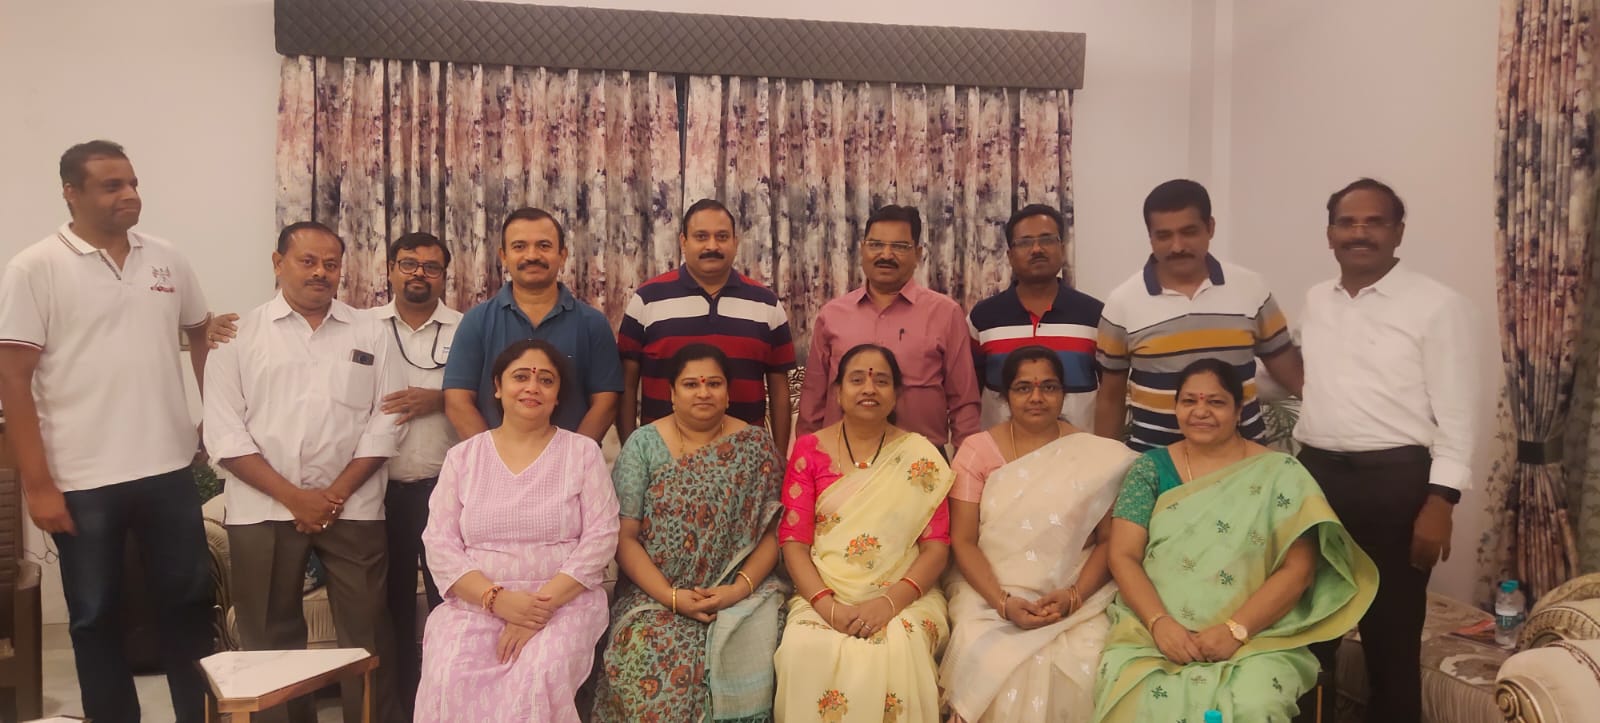 तेलुगू एसोसिएशन की बैठक में शामिल पदाधिकारी व सदस्य.